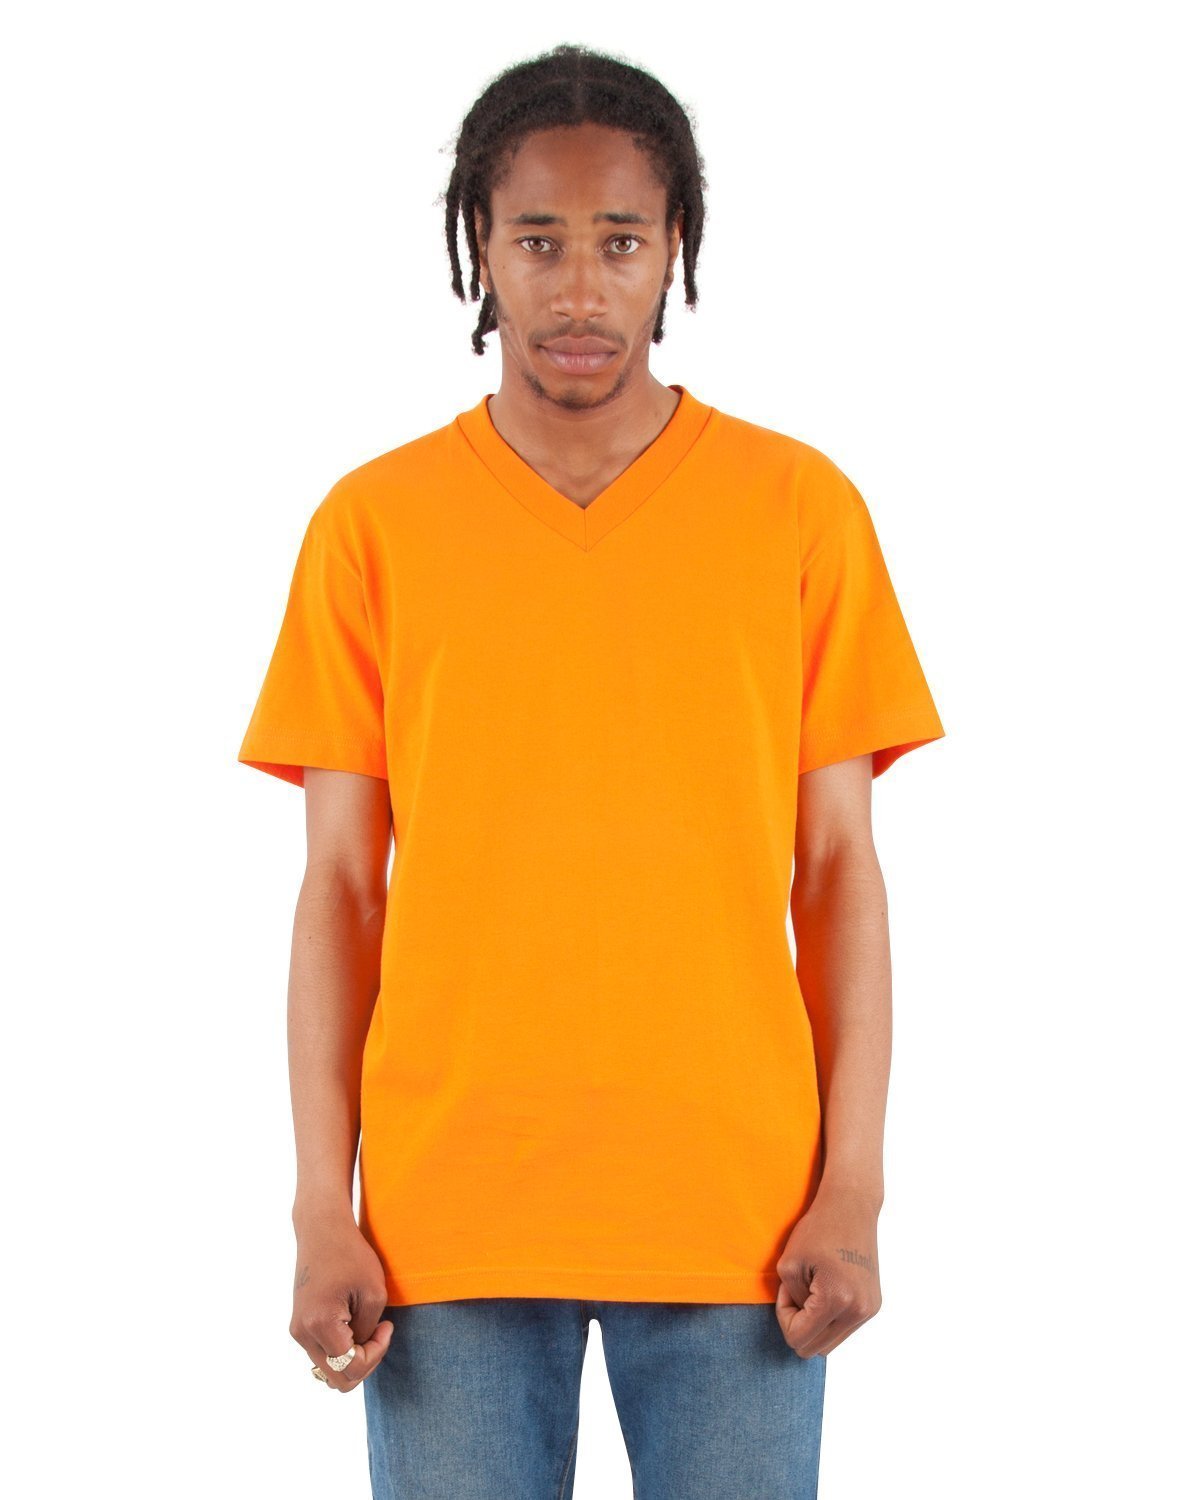 6.2 oz V-Neck - Standard Sizes XL / Orange